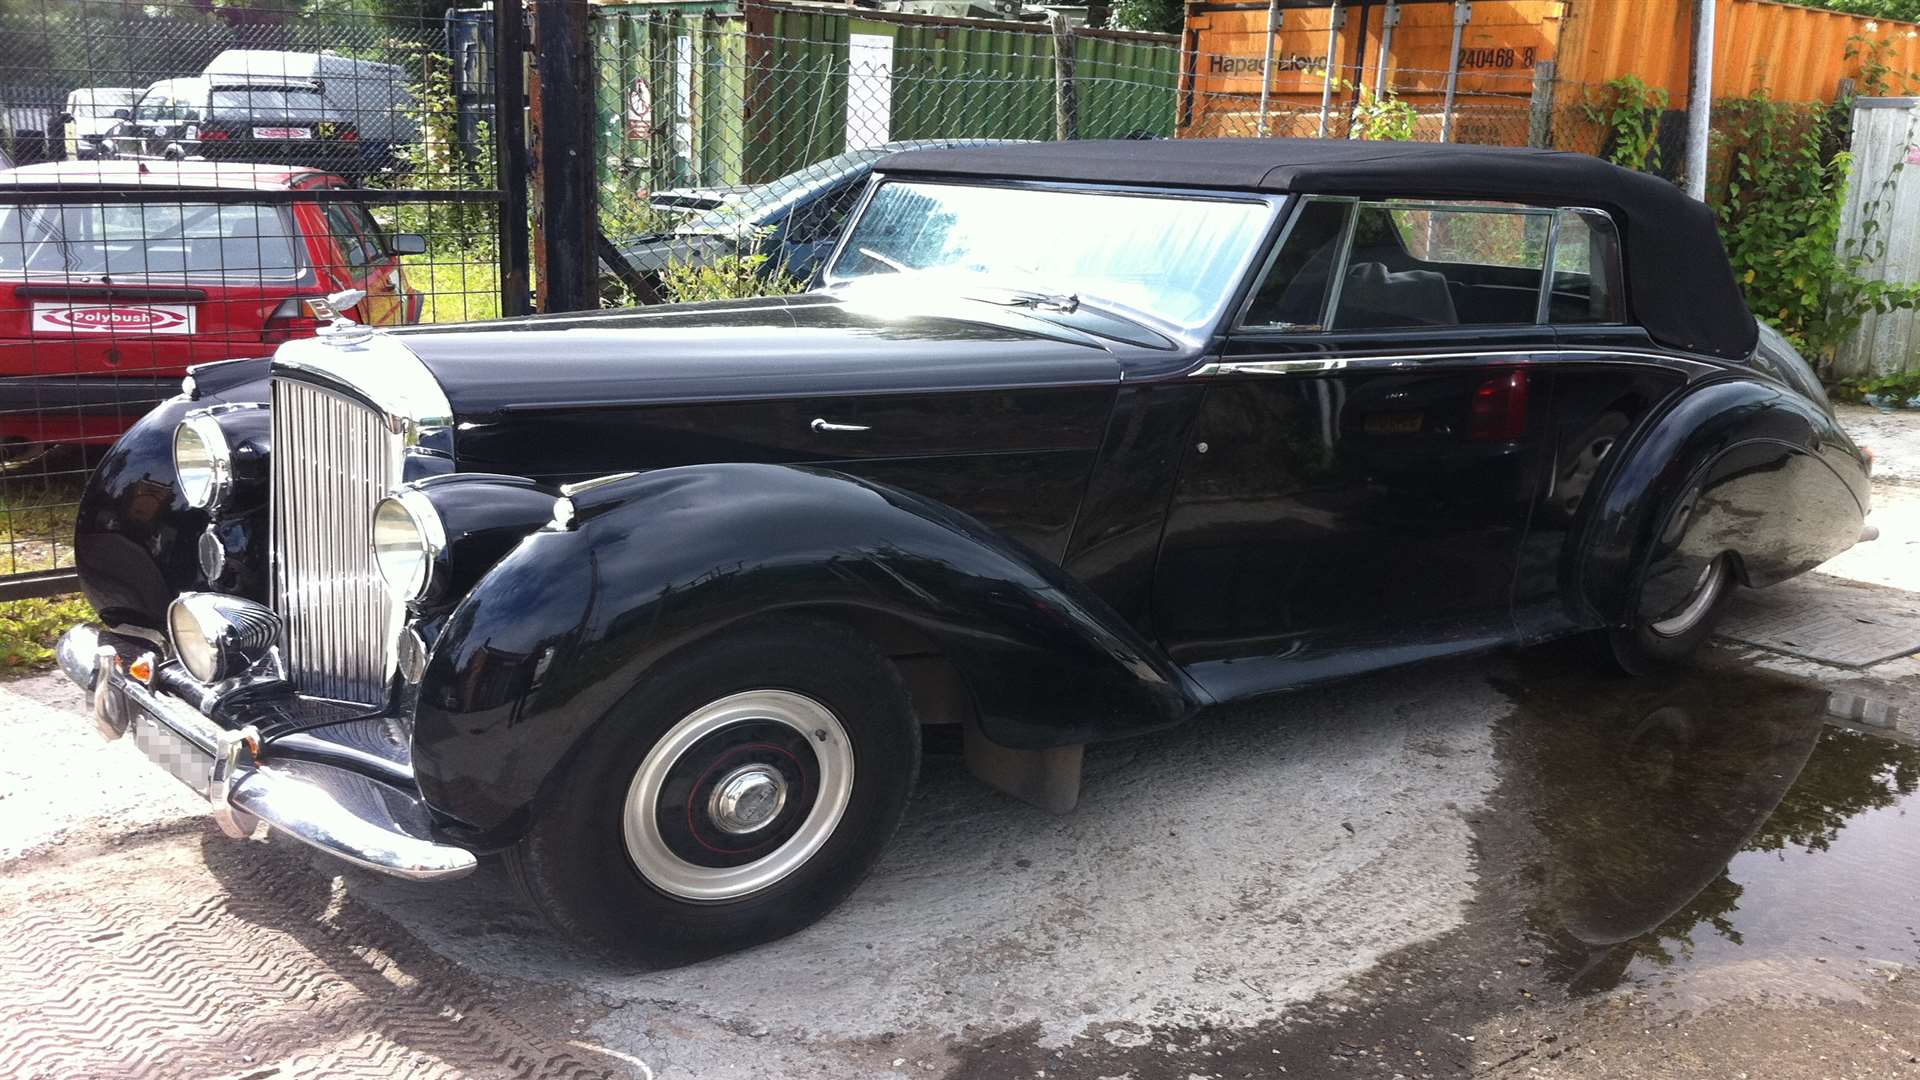 The Bentley